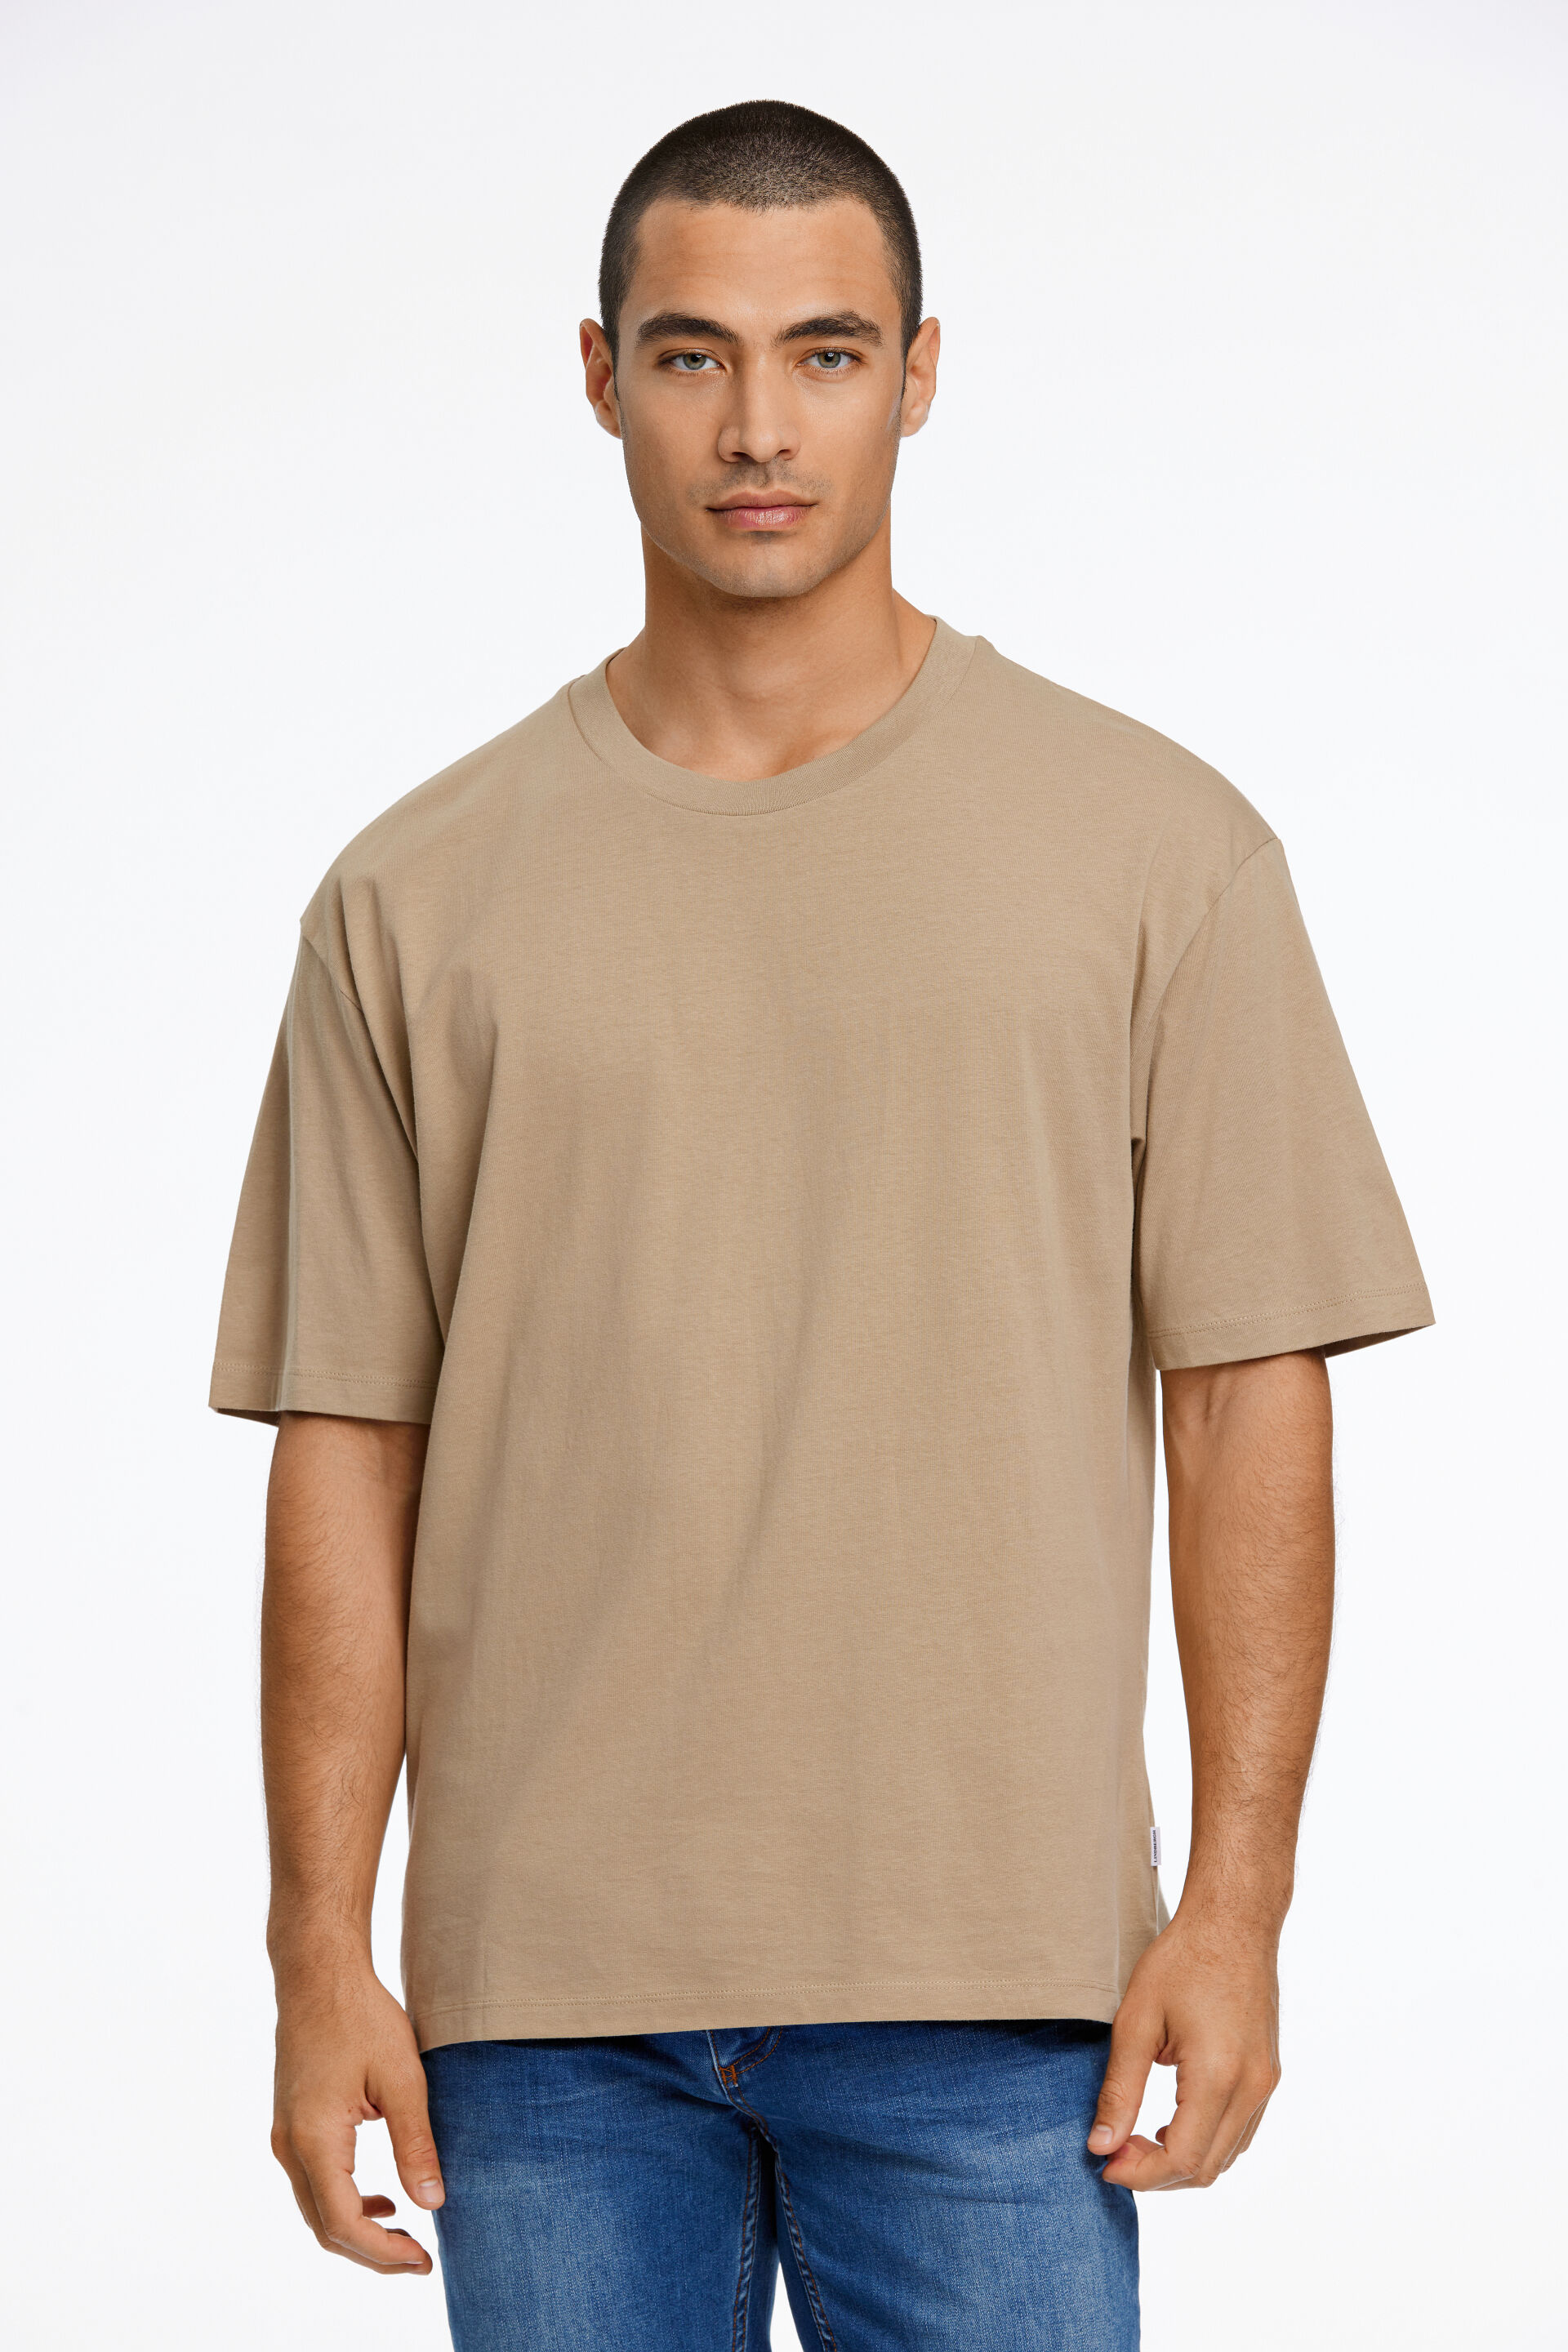 T-shirt T-shirt Sand 30-400198